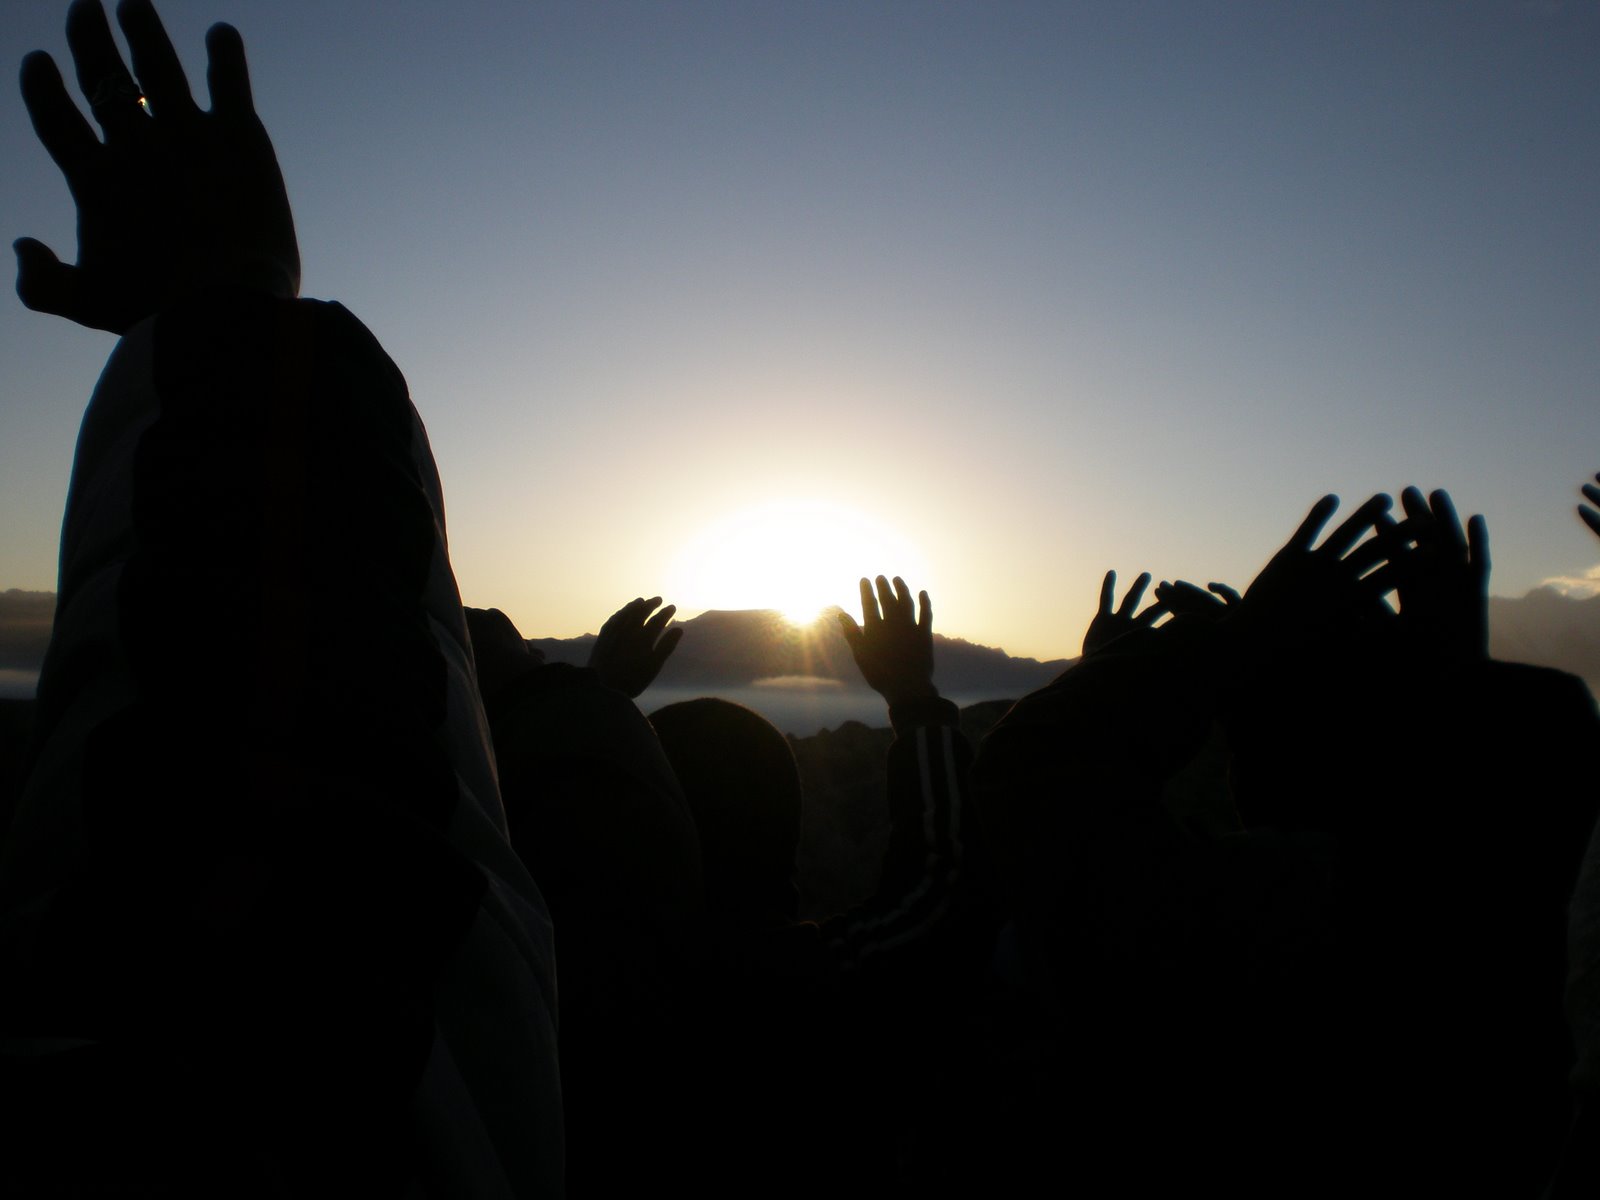 [Sun+worship+hands.jpg]